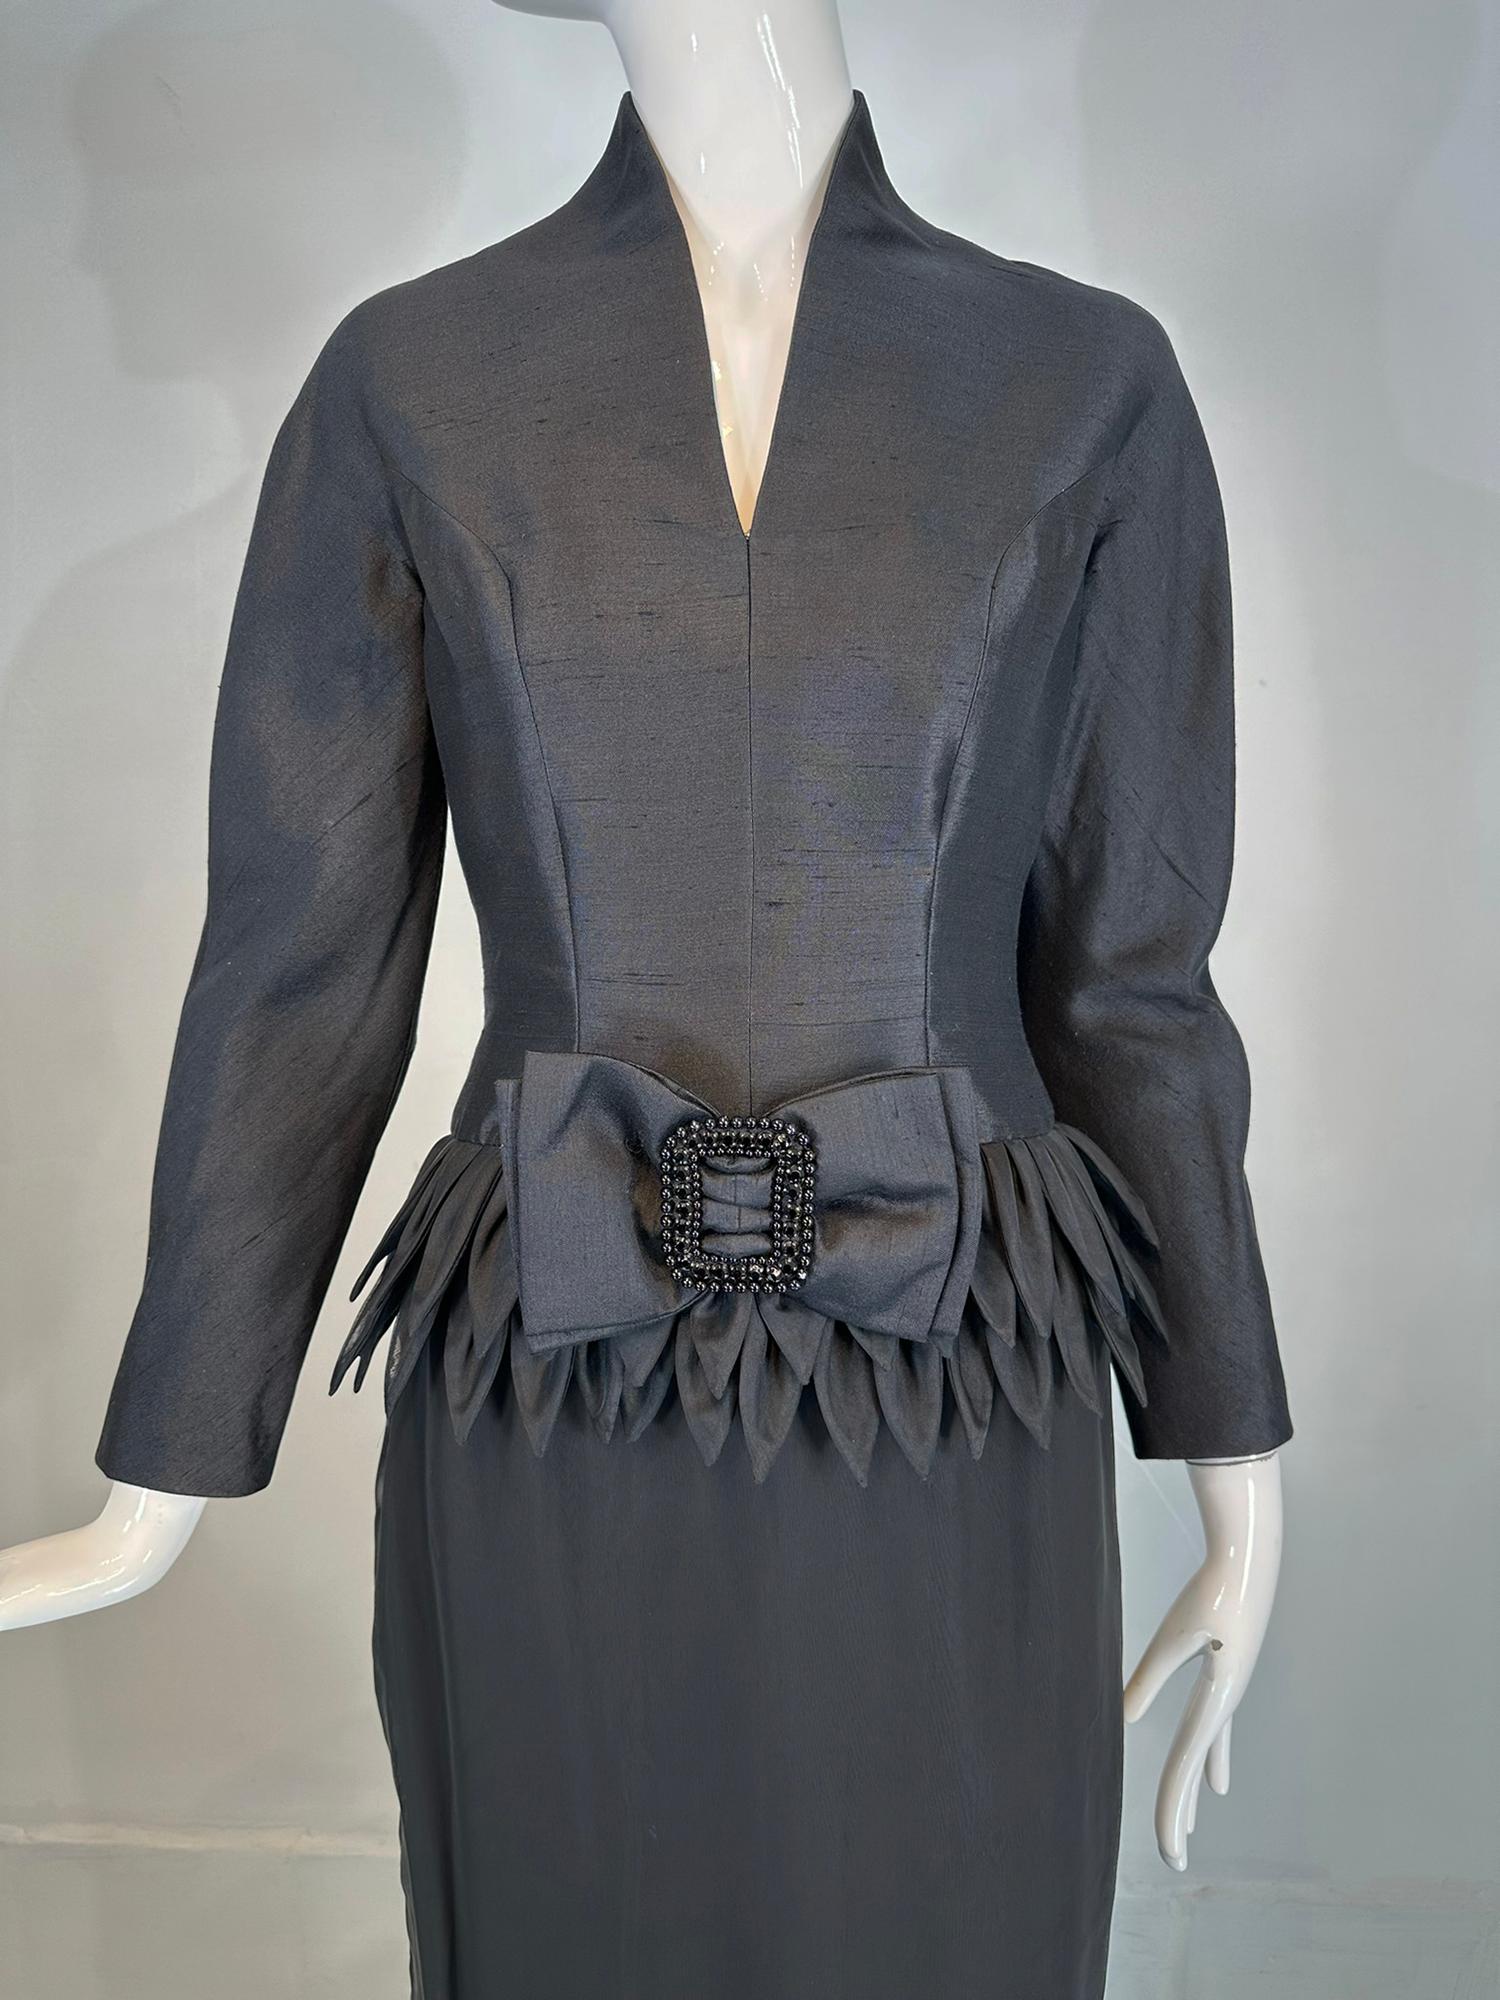 Vinchi Demi Couture Abendkleid aus schwarzer Seide mit handgerollten Blütenblättern aus den 1960er Jahren, Hongkong. Hongkong war schon immer ein Mekka der Handschneiderei. In den 50er und 60er Jahren war sie bekannt für perlenbesetzte Abend- und